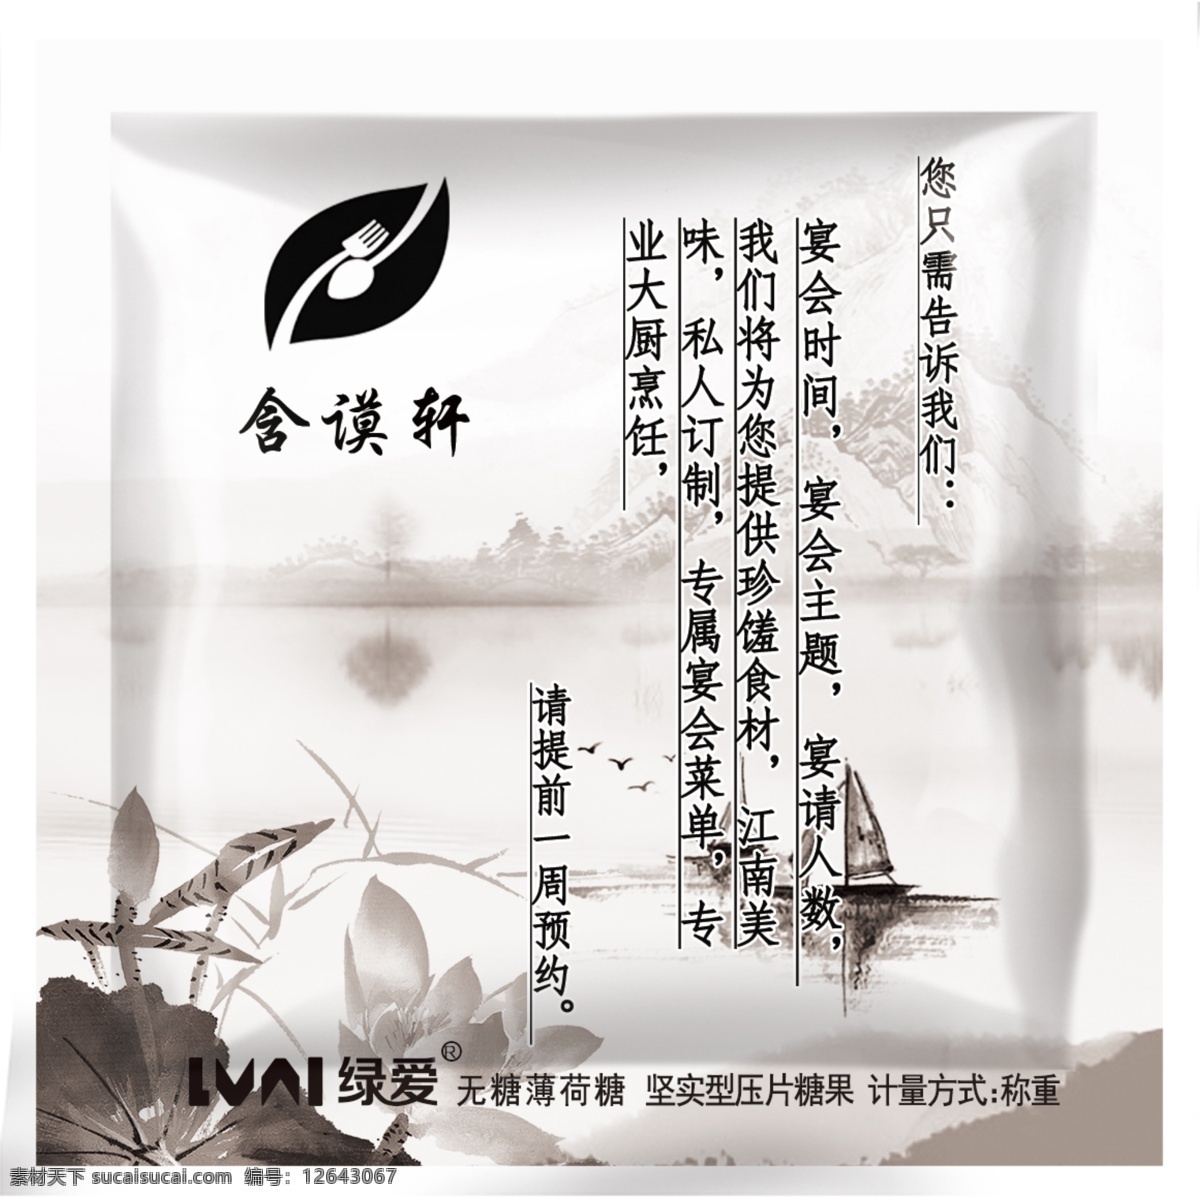 含 谟 轩 餐饮 公司 糖果包装 餐饮公司 中国风 水墨 平面设计 包装设计